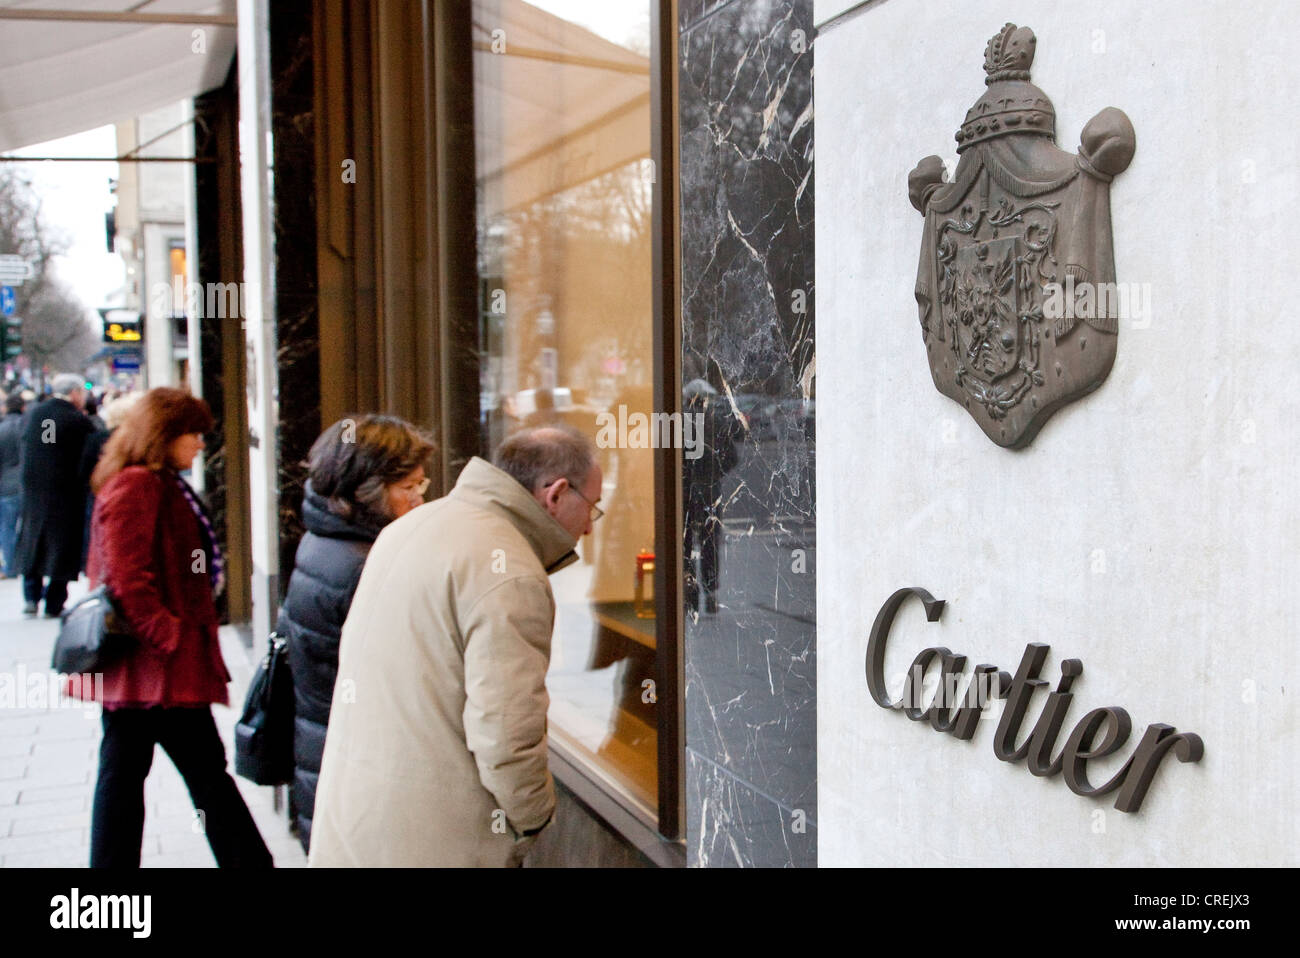 Los peatones mirando la pantalla en el shopwindow de la joyería Cartier, Koenigsallee paseo de compras, Koe corto Foto de stock